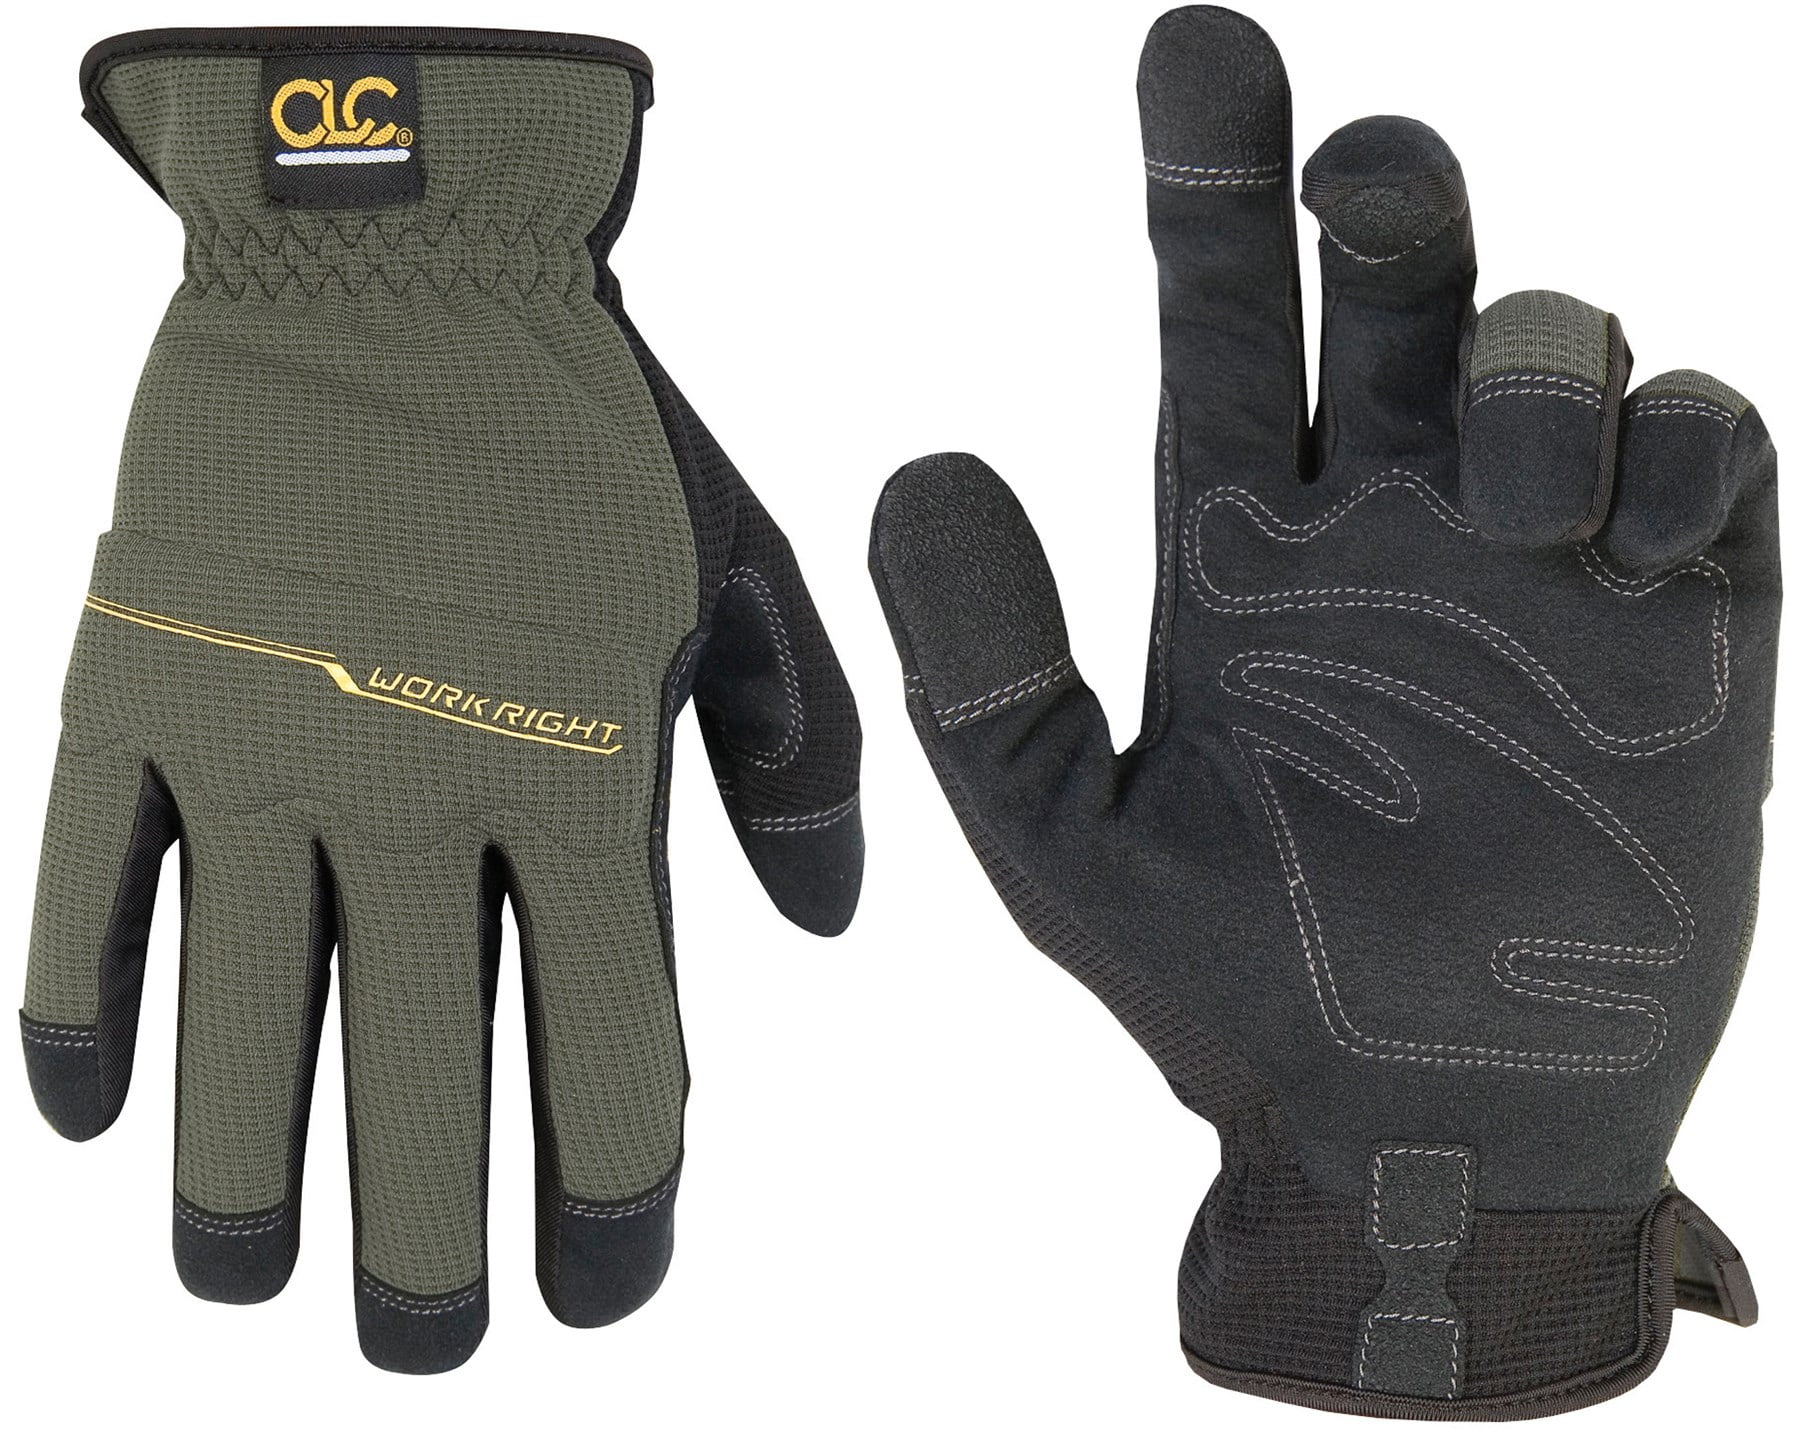 Clc Work Gear 123m Medium Workright Oc Flexgrip Gloves 